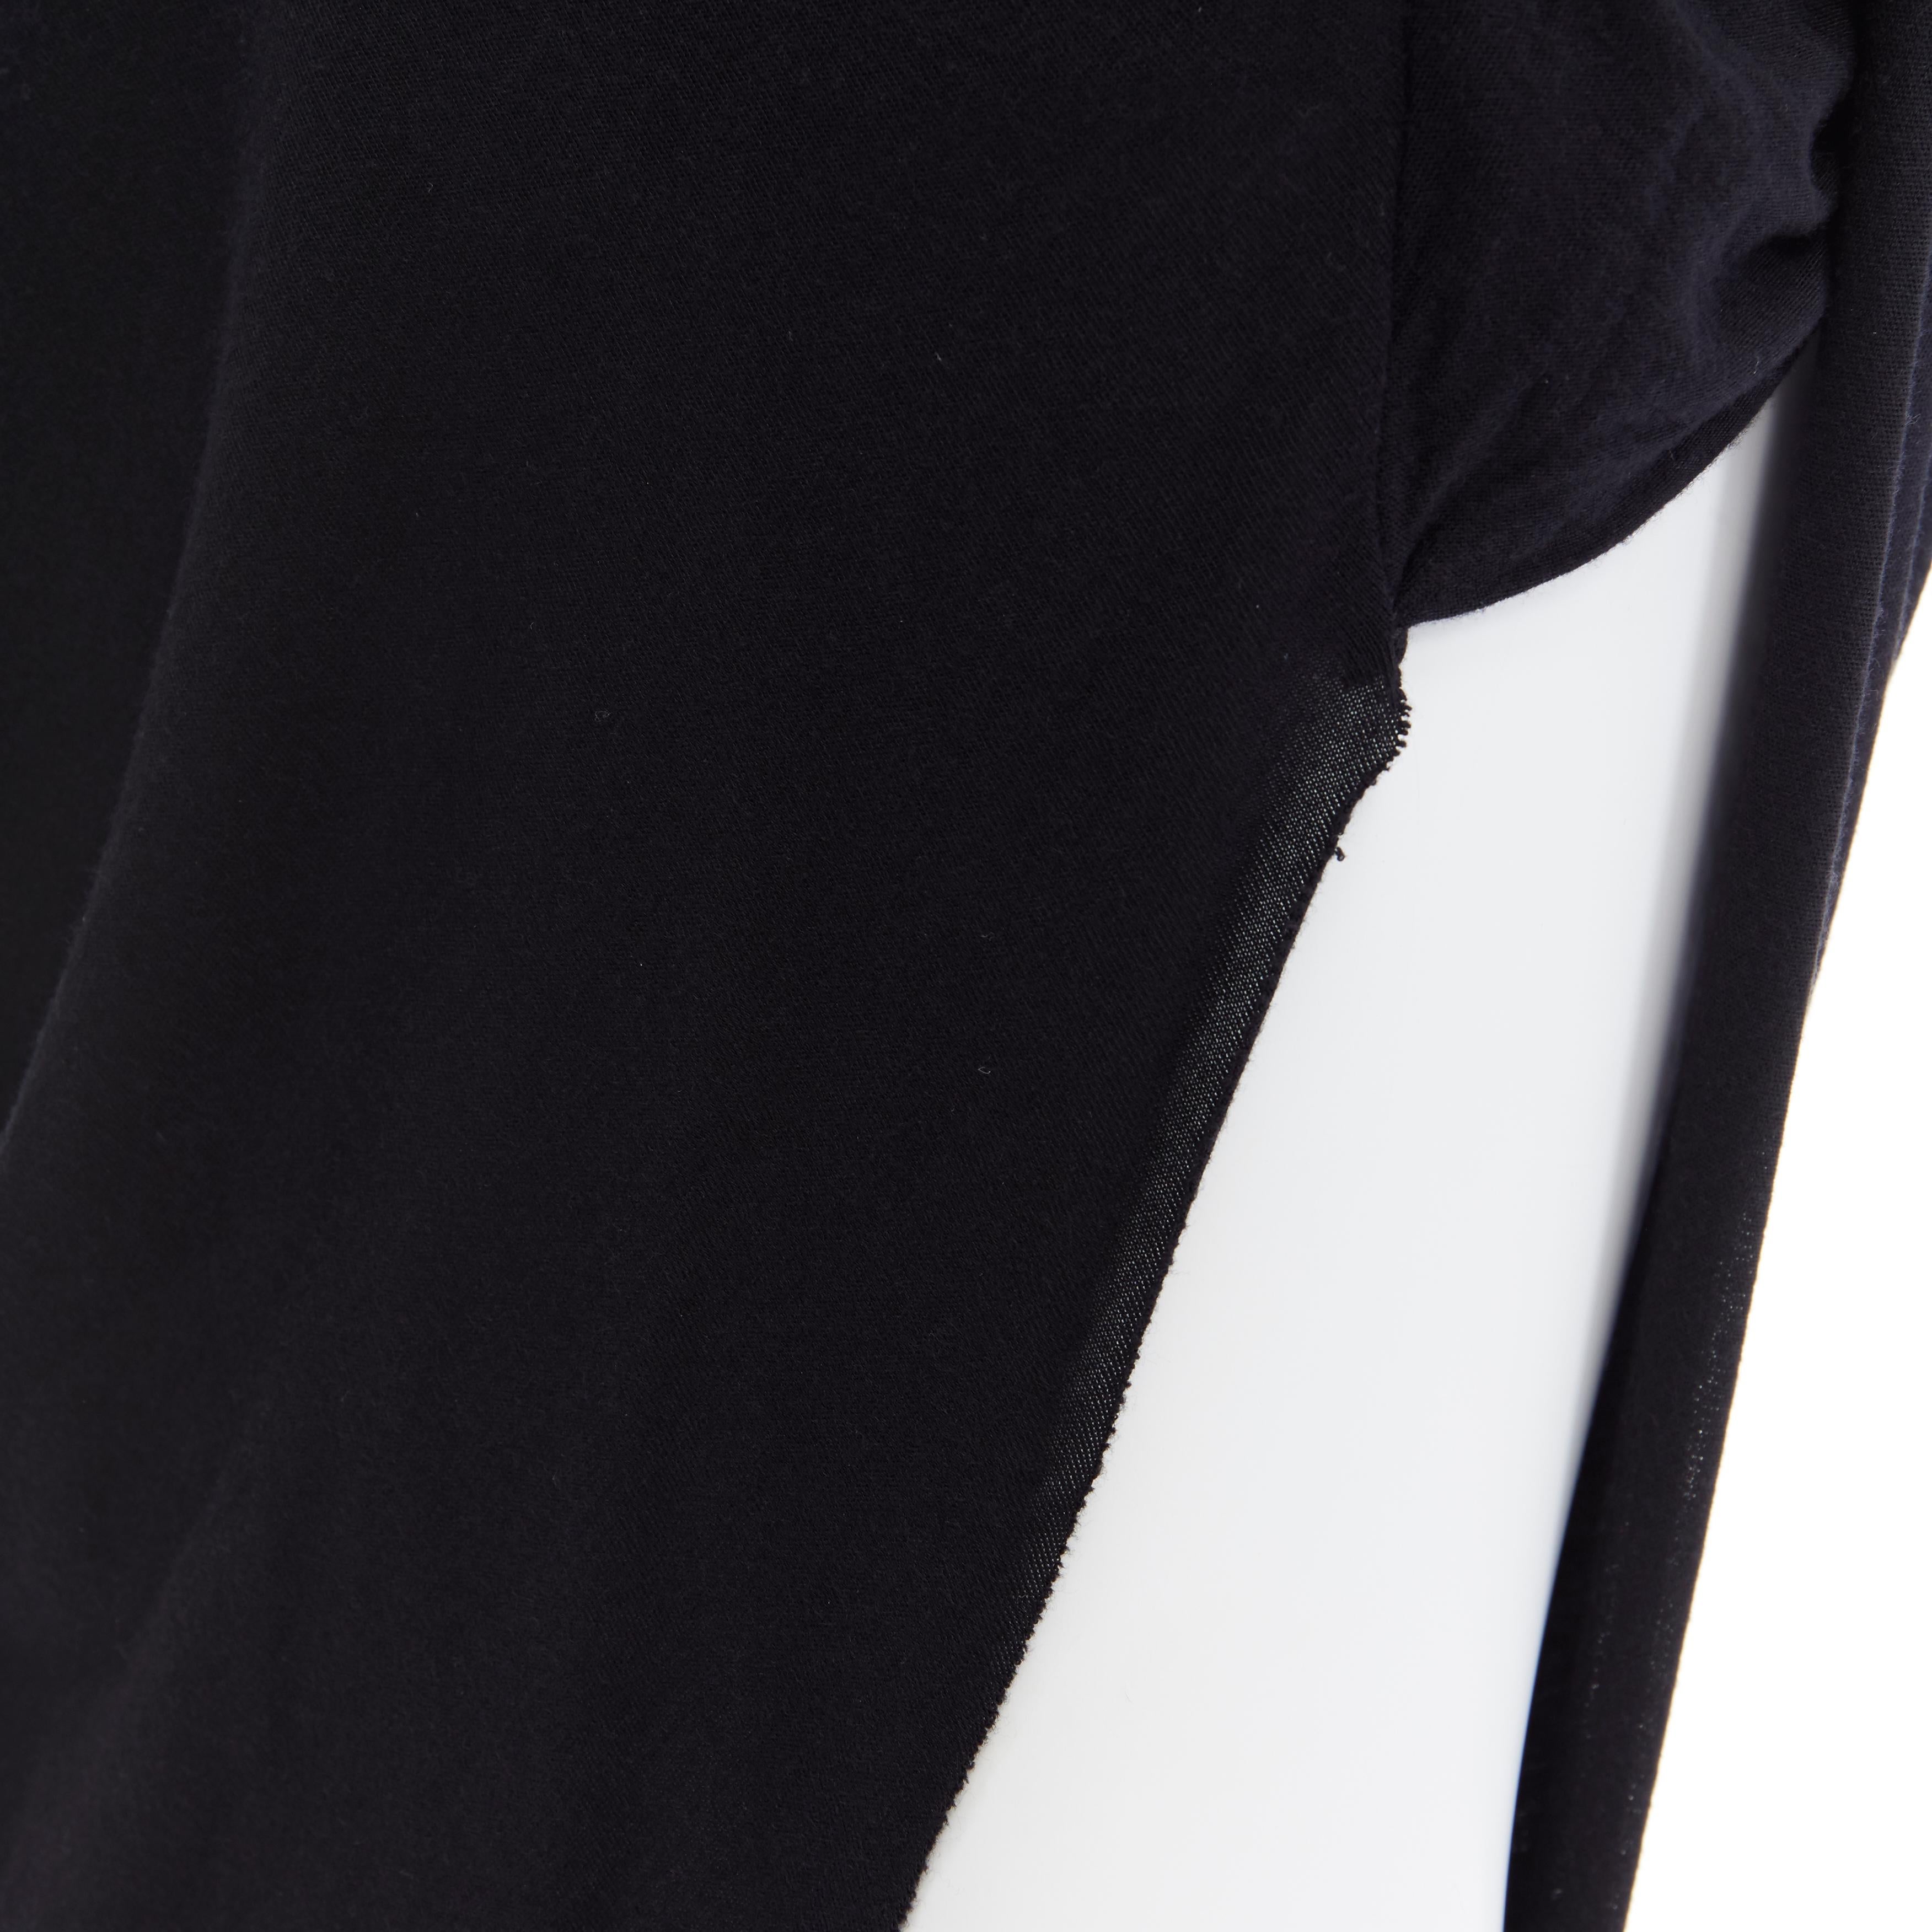 HELMUT HELMUT LANG black micro modal nylon draped open side casual skirt XS 2